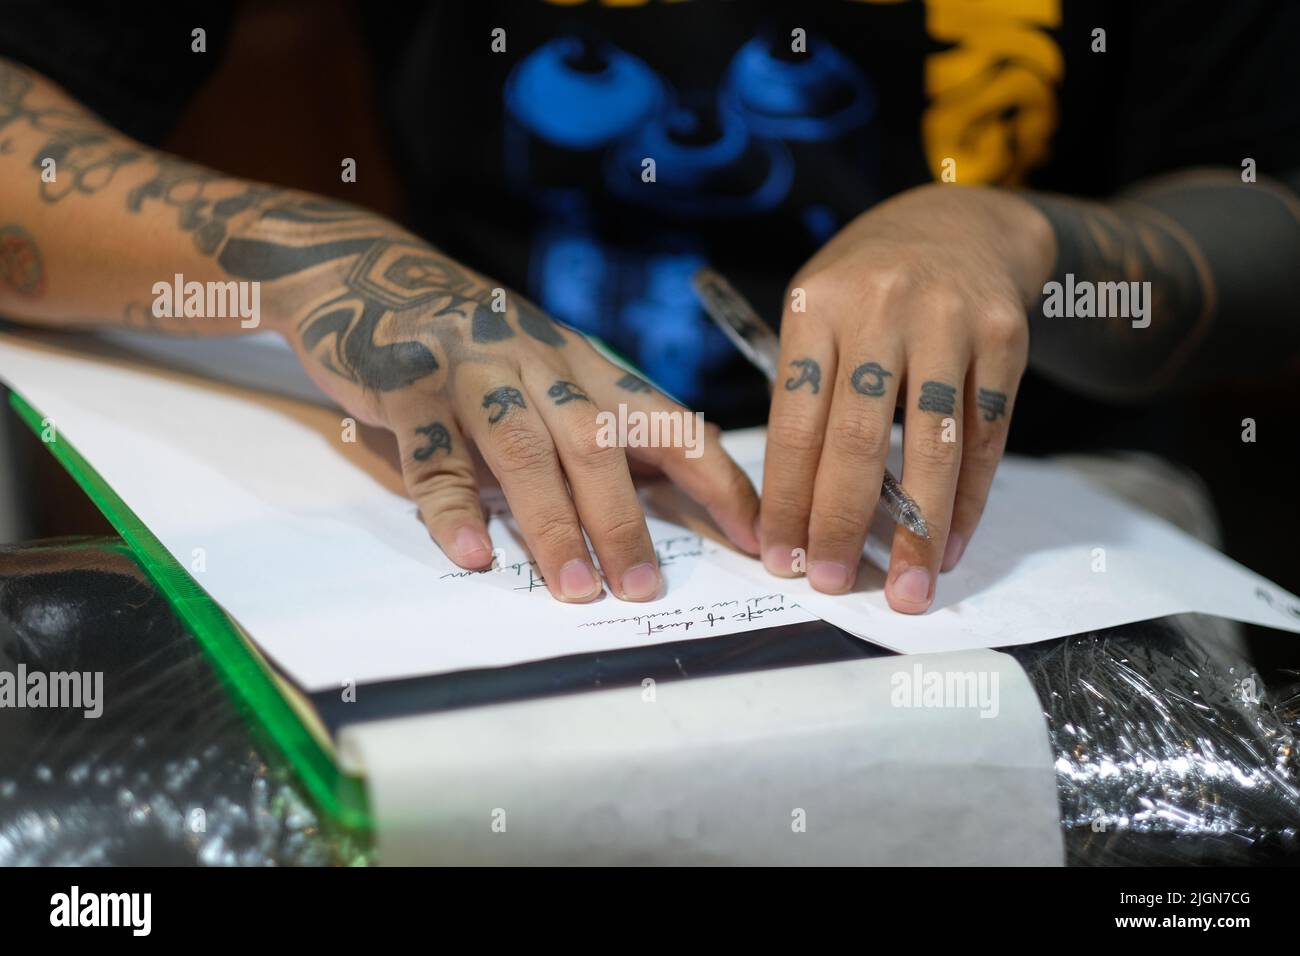 Nahaufnahme der eingekeilten Finger des Tätowierers, während er pausiert, während er kursive Schrift mit einem Stift auf weißes Papier schminkt, um sich auf eine Tätowierungssitzung vorzubereiten. Stockfoto